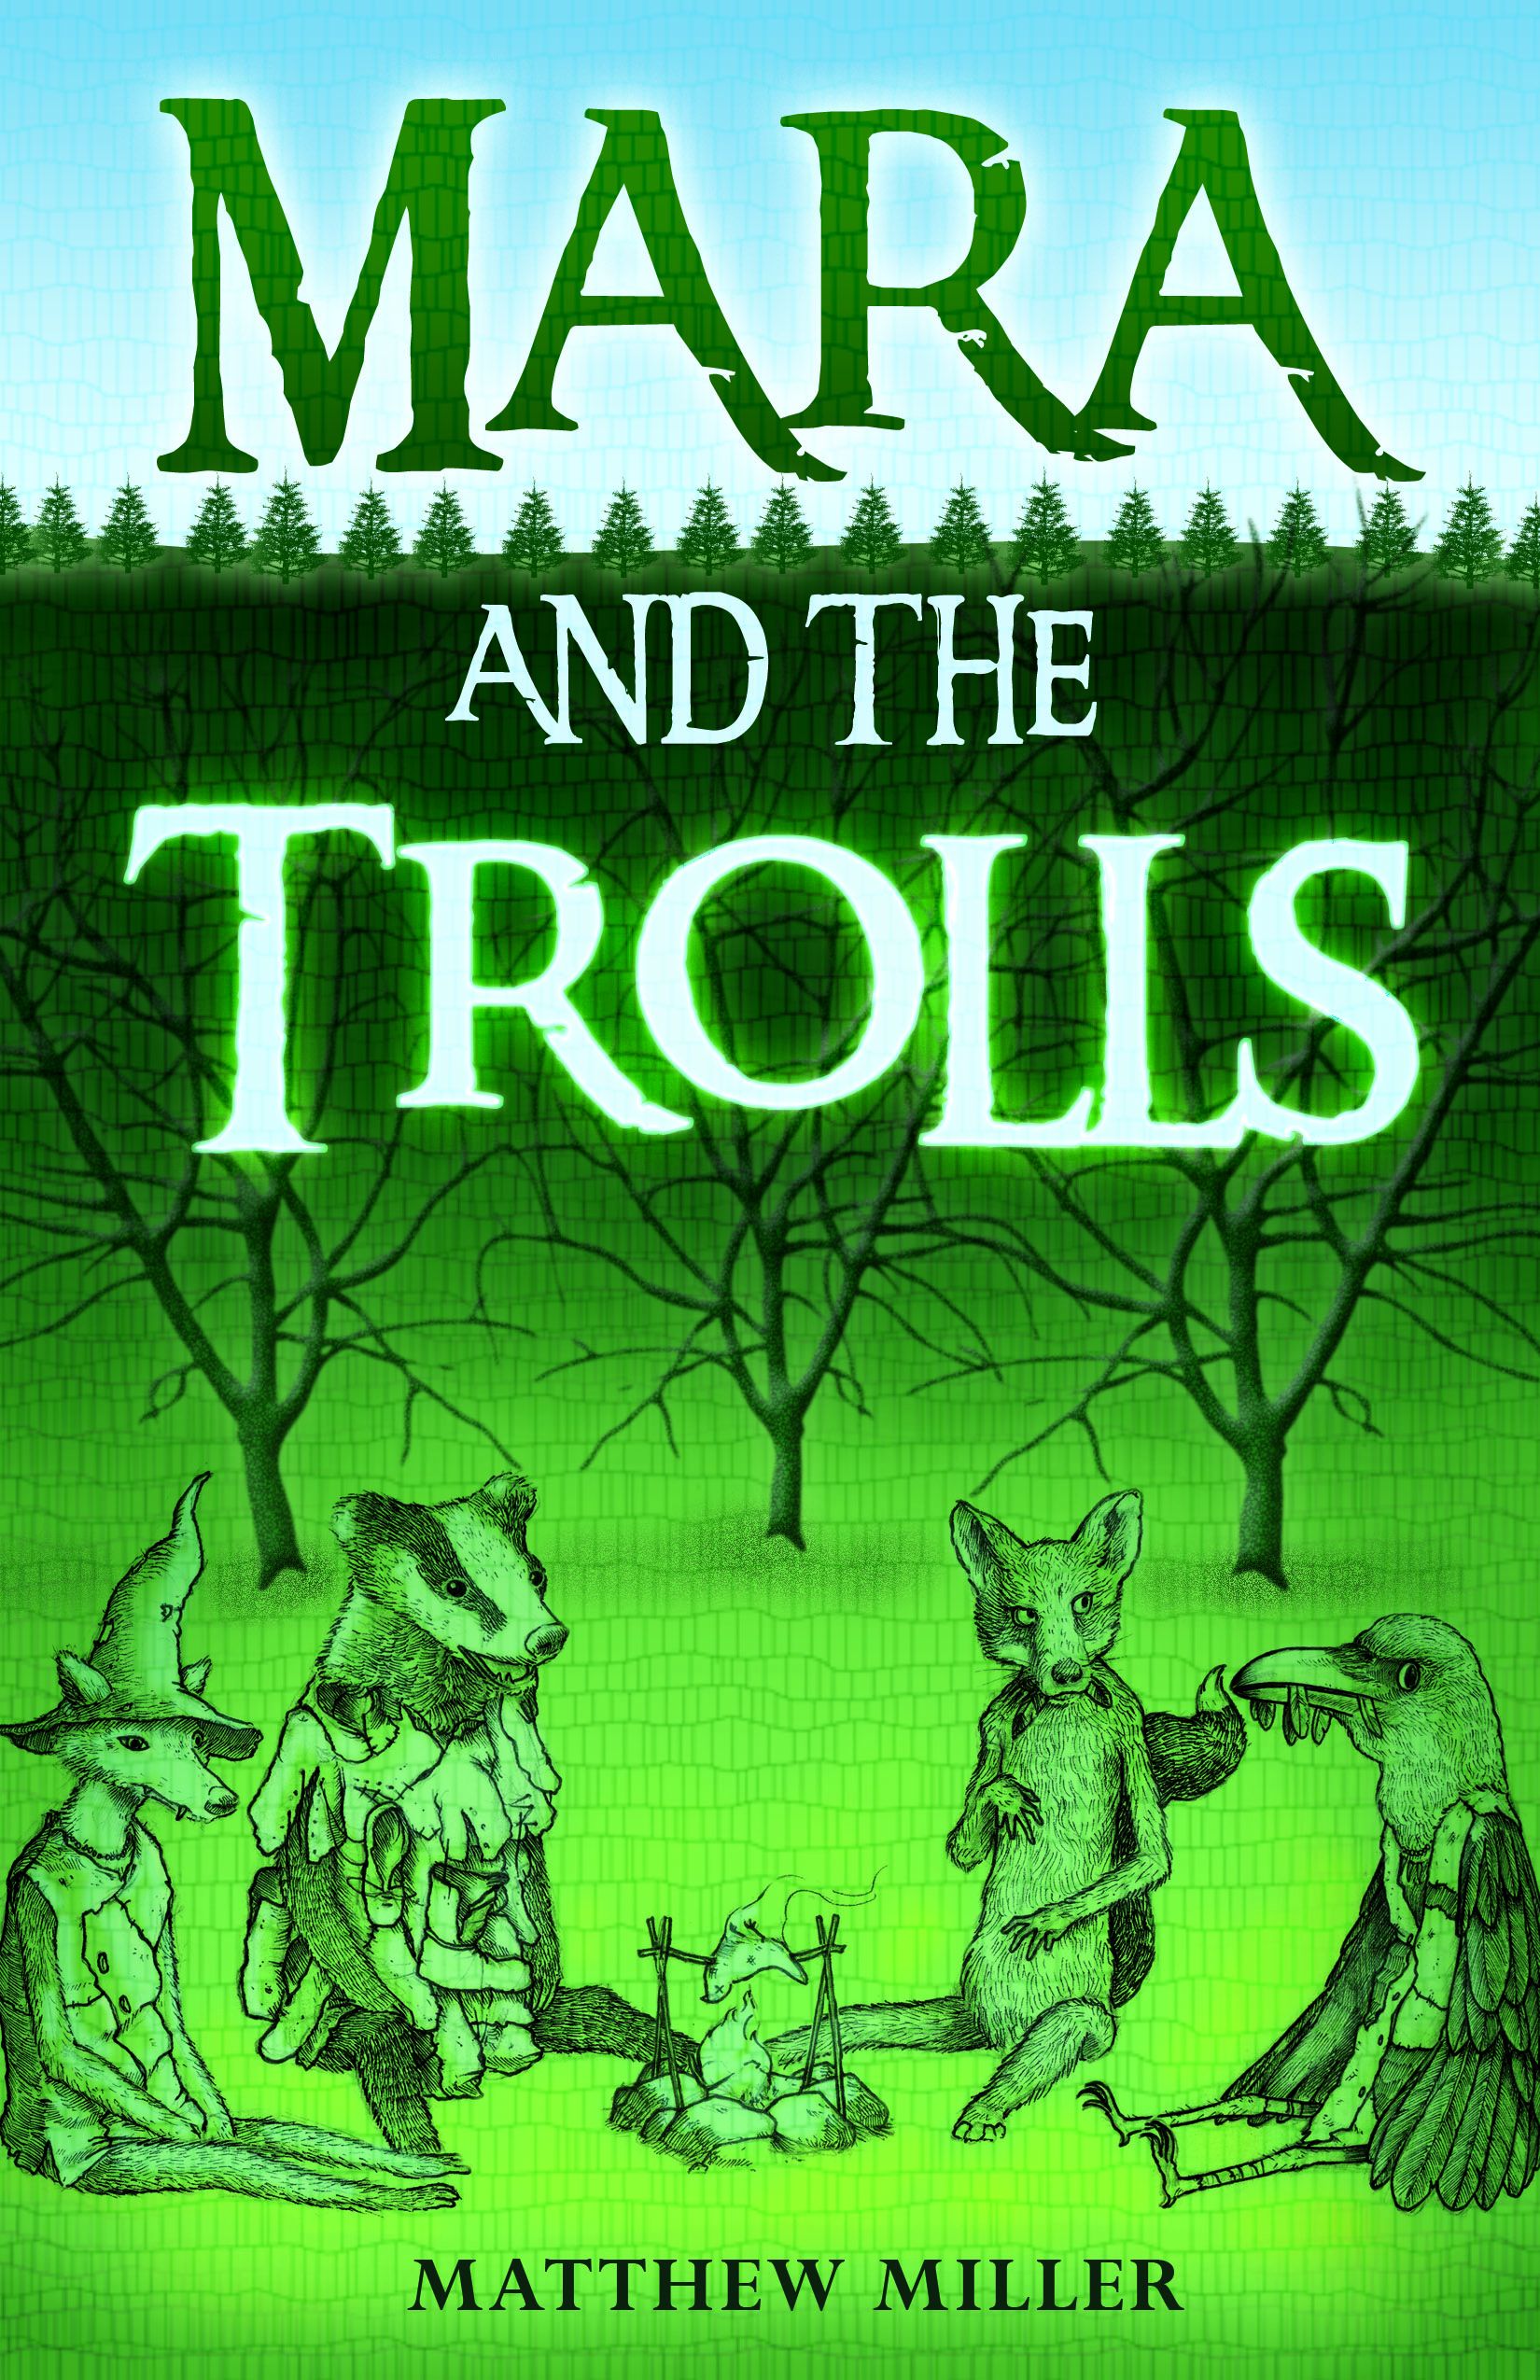 Mara and the Trolls